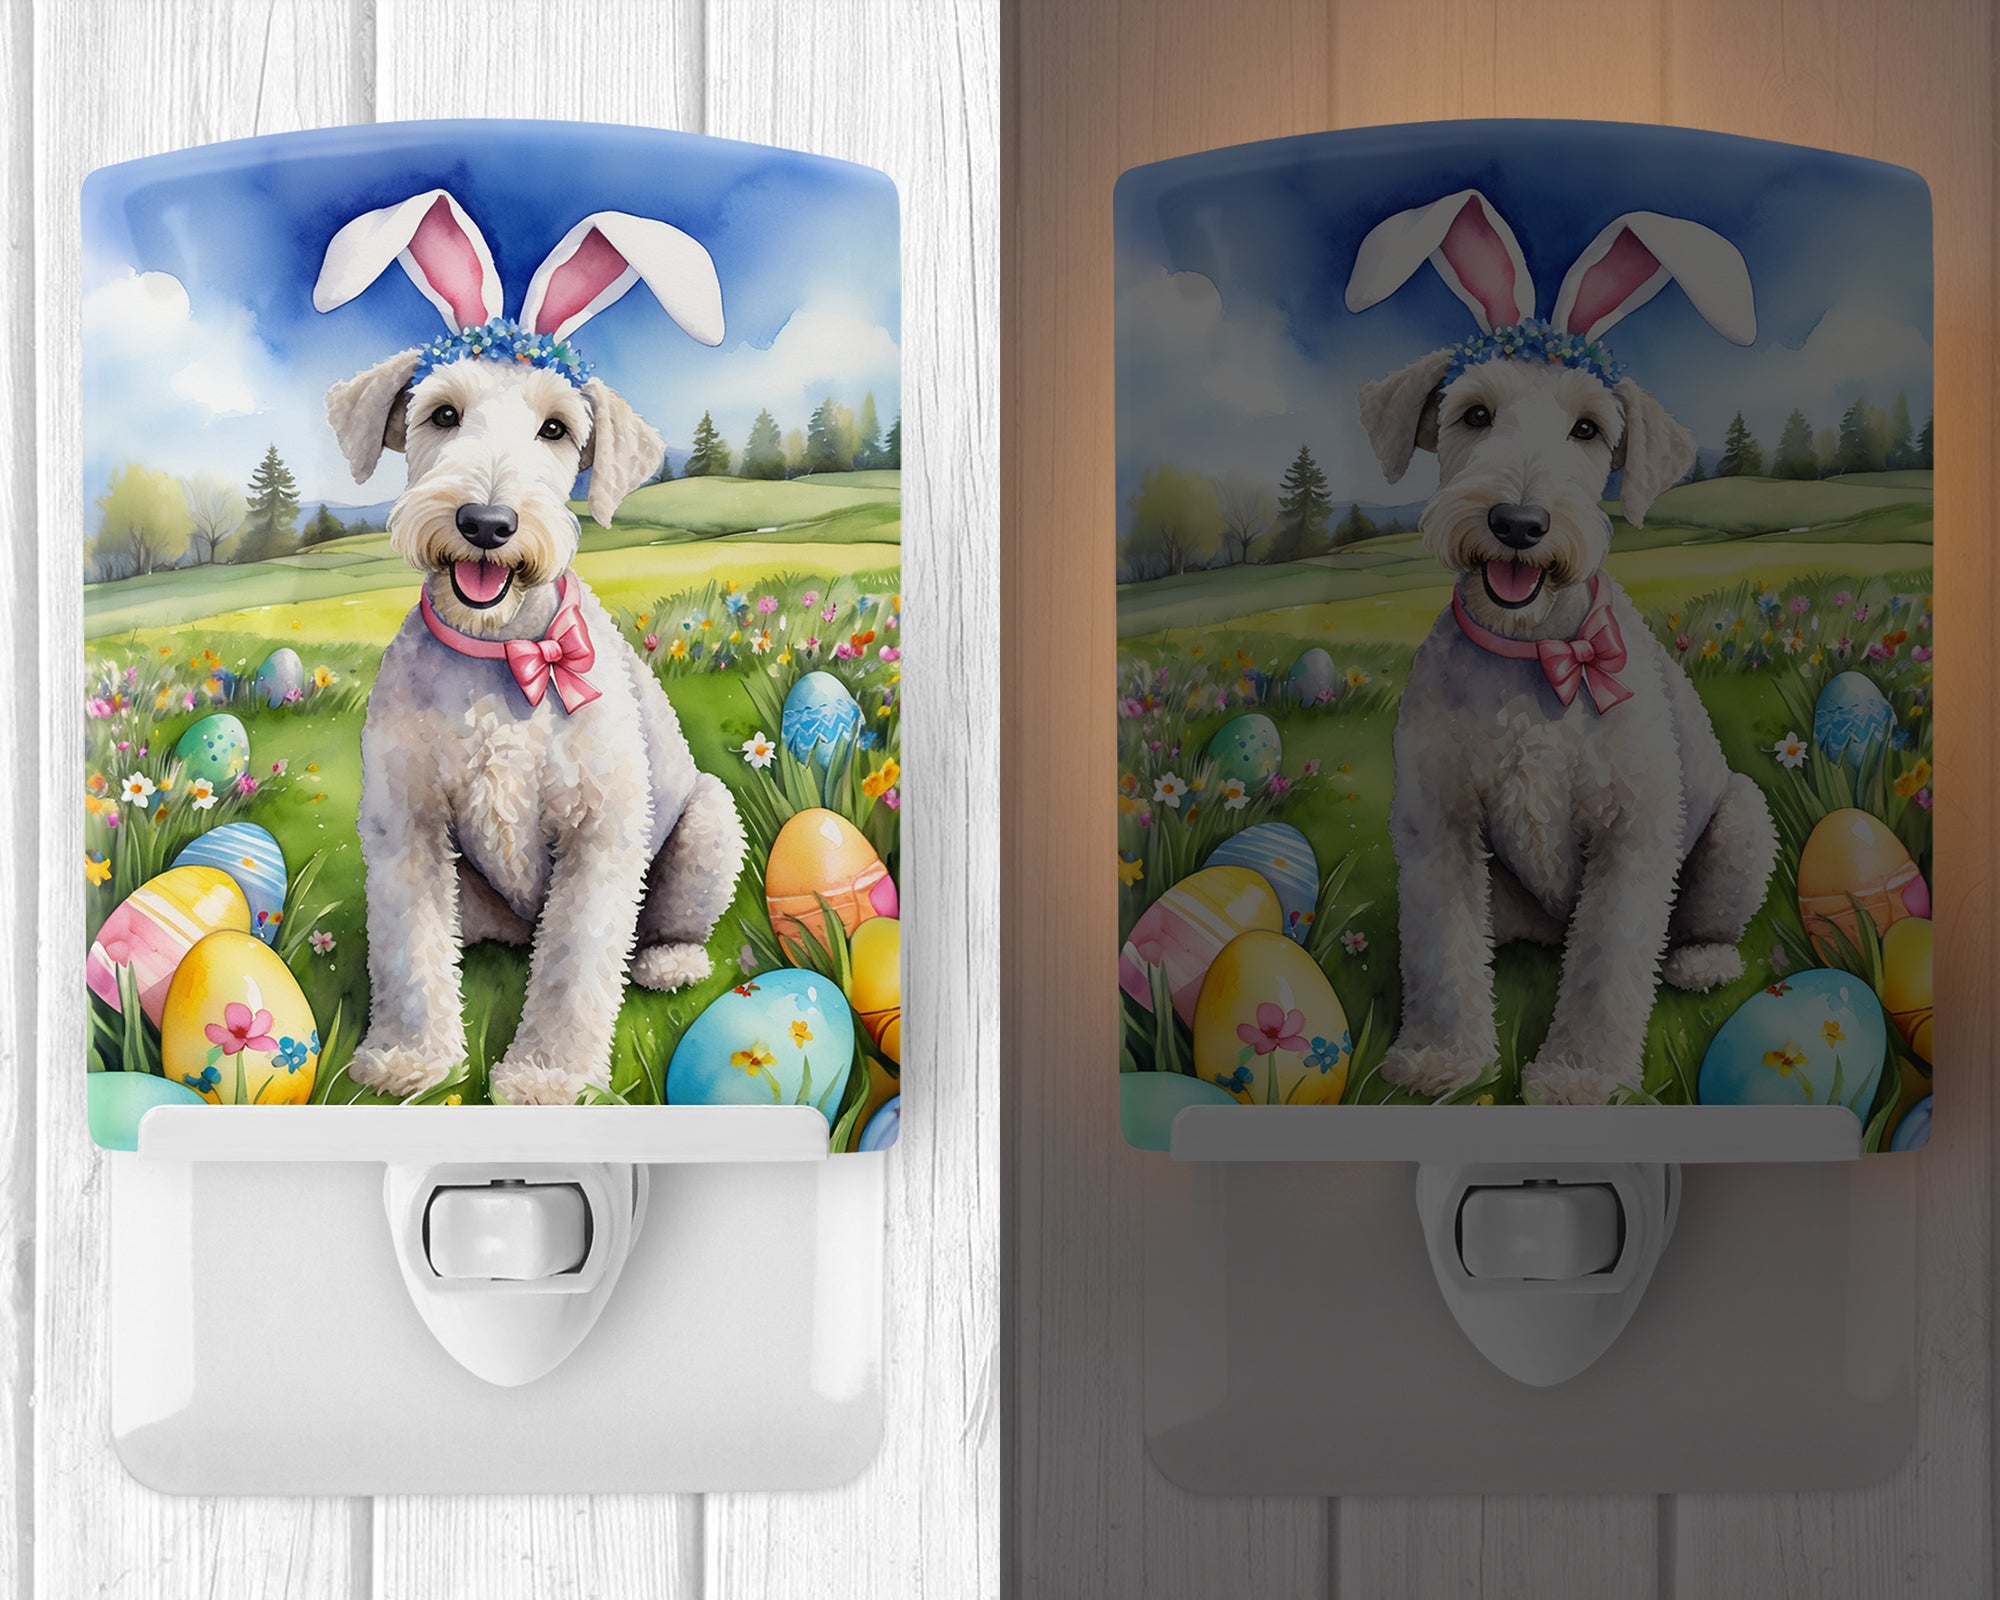 Bedlington Terrier Easter Egg Hunt Ceramic Night Light